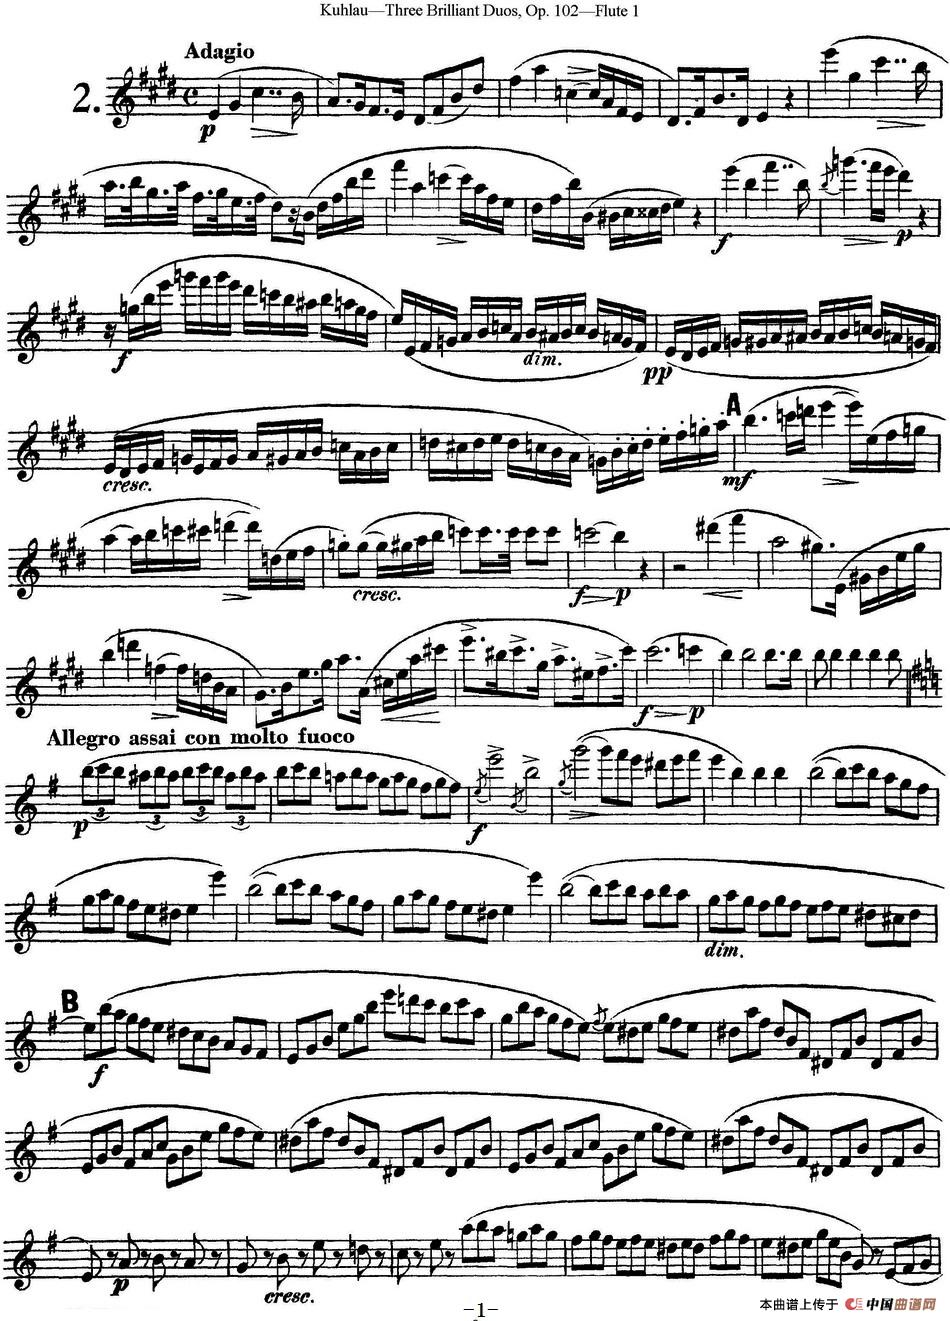 库劳长笛二重奏练习三段OP.102——Flute 1（NO.2）